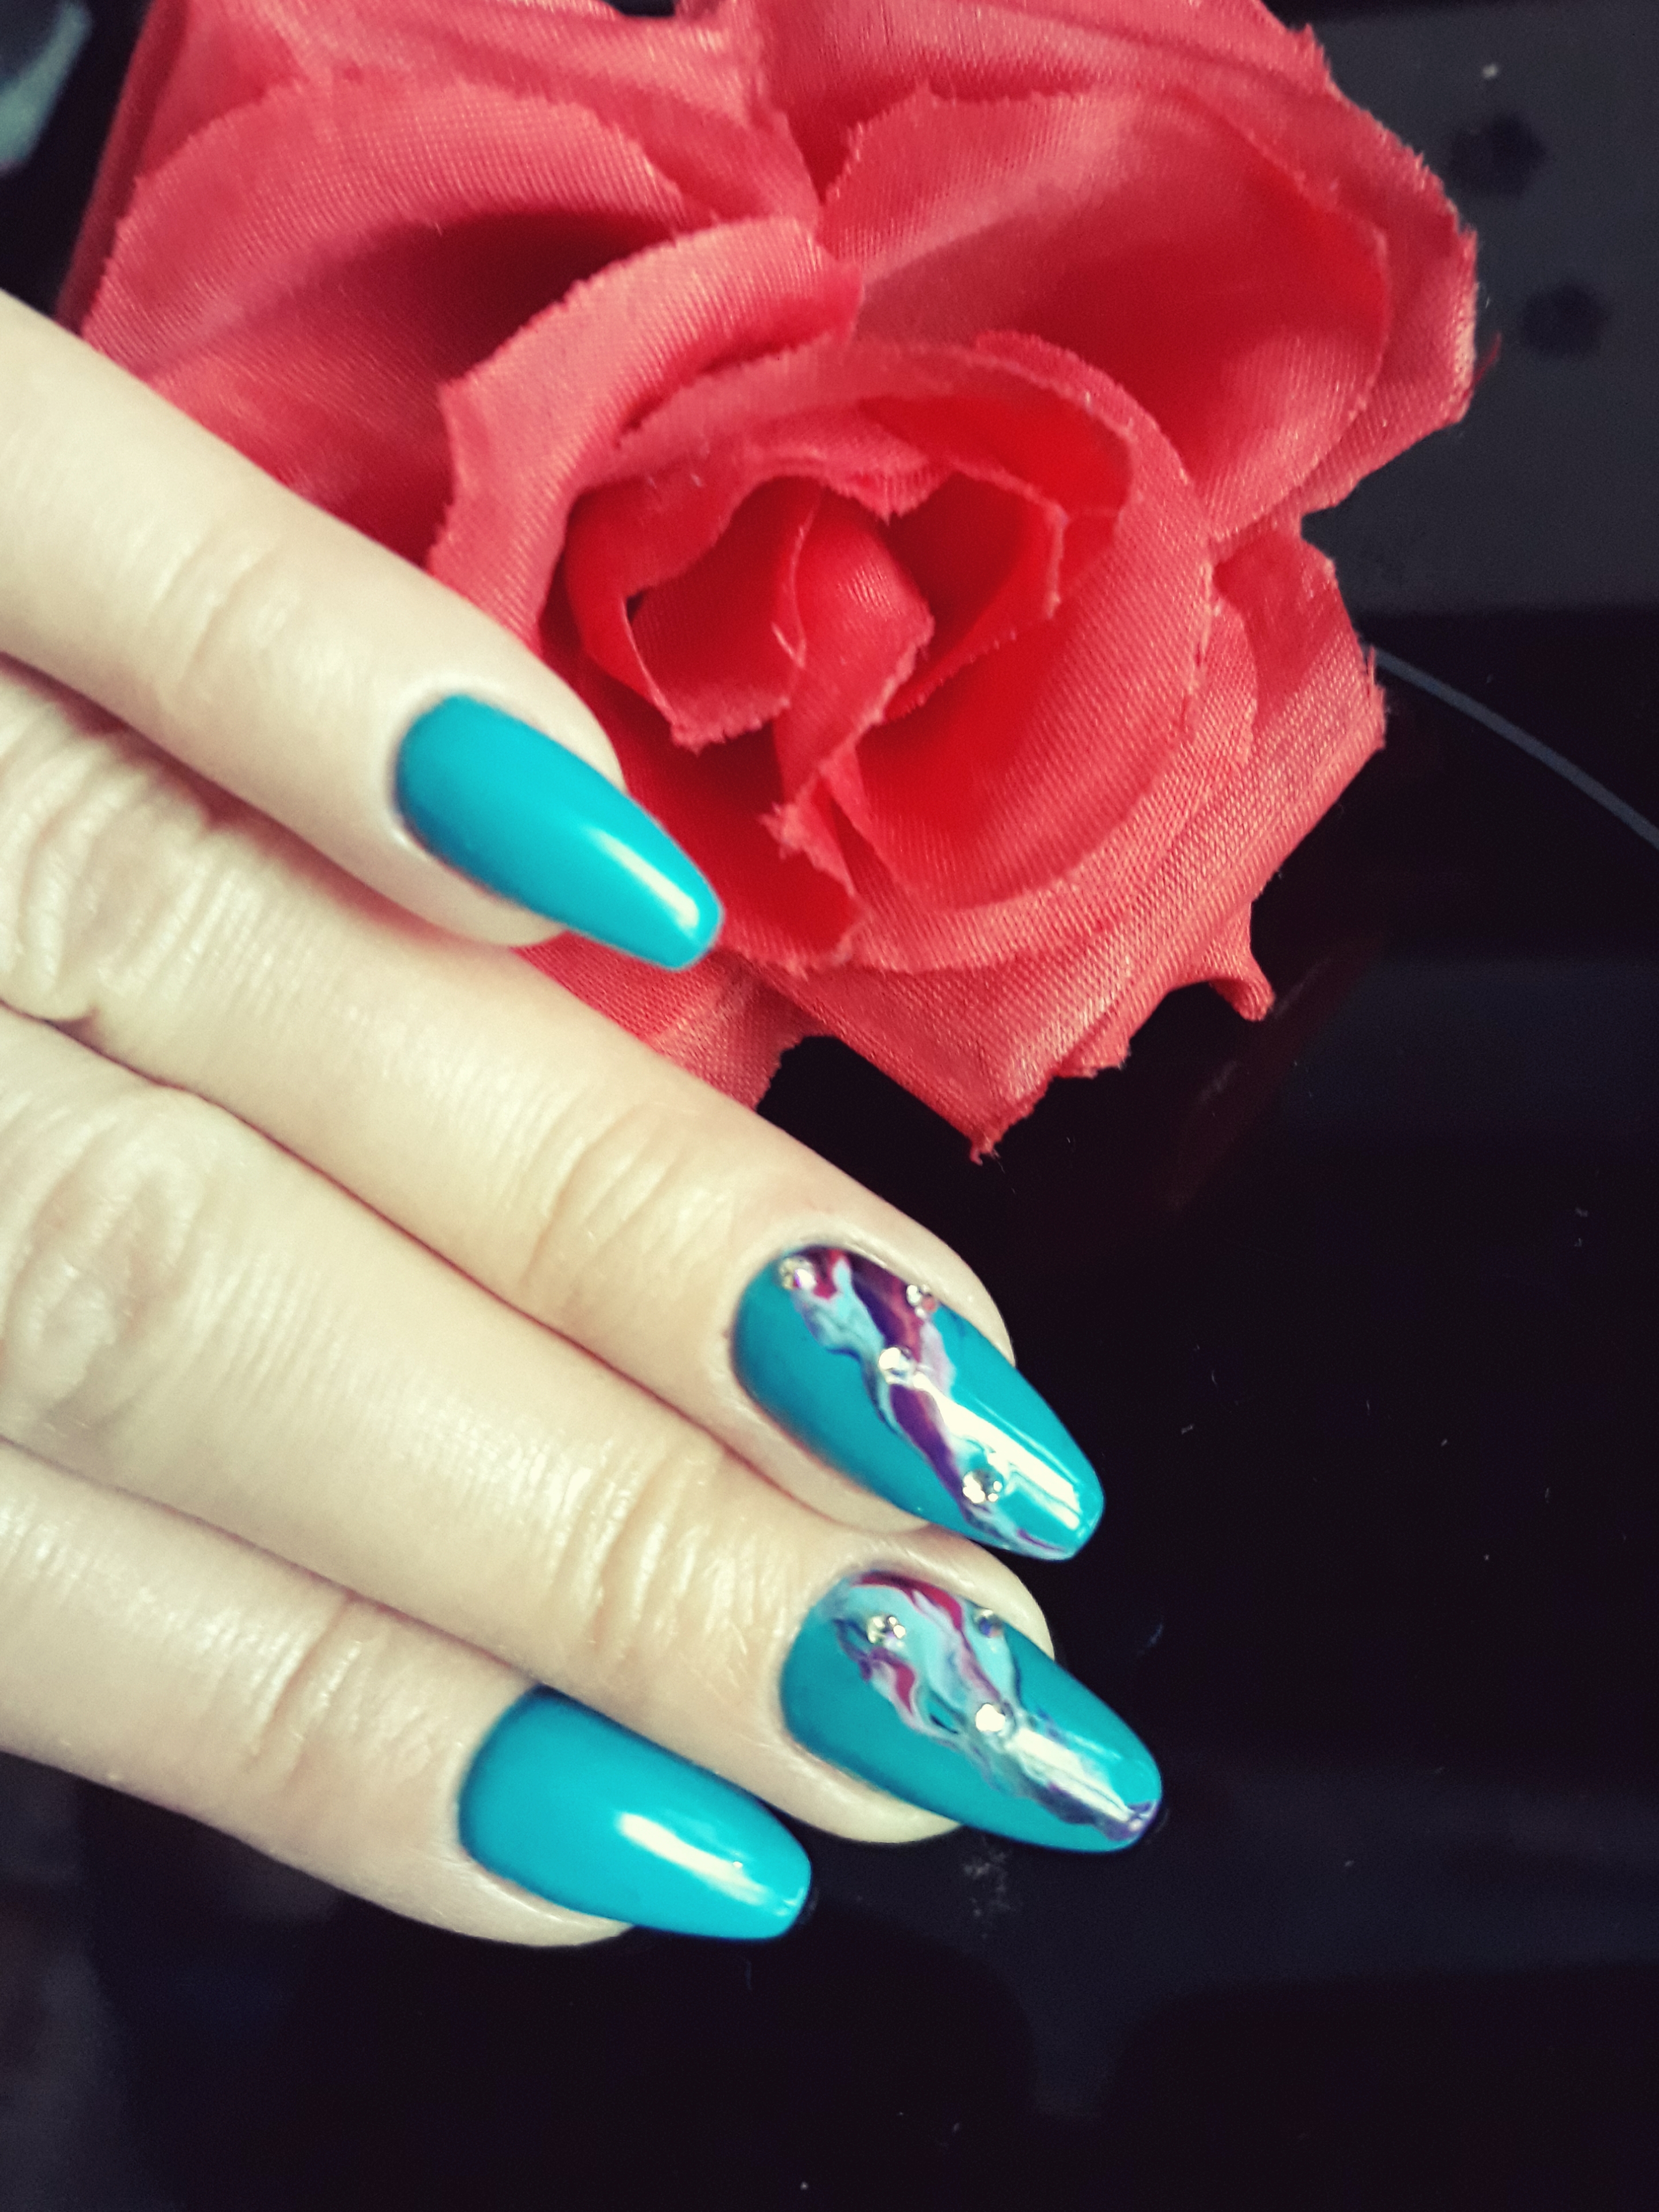 Маникюр с абстрактным рисунком в голубом цвете на длинные ногти.